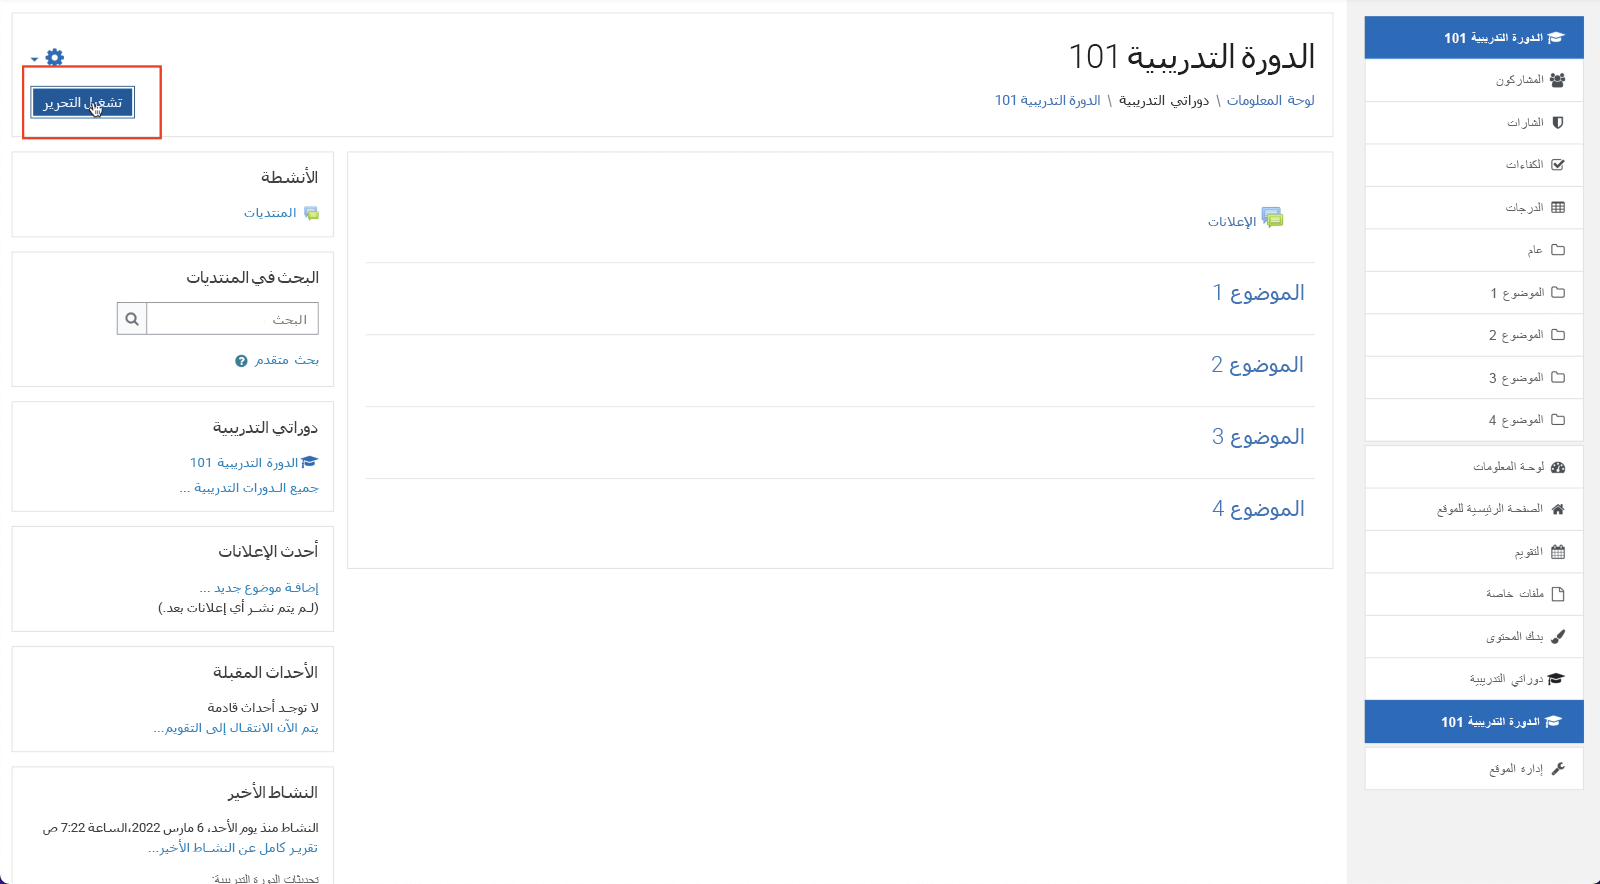 لقطة شاشة لـ Moodle، تشغيل التحرير في الزاوية العلوية اليمنى